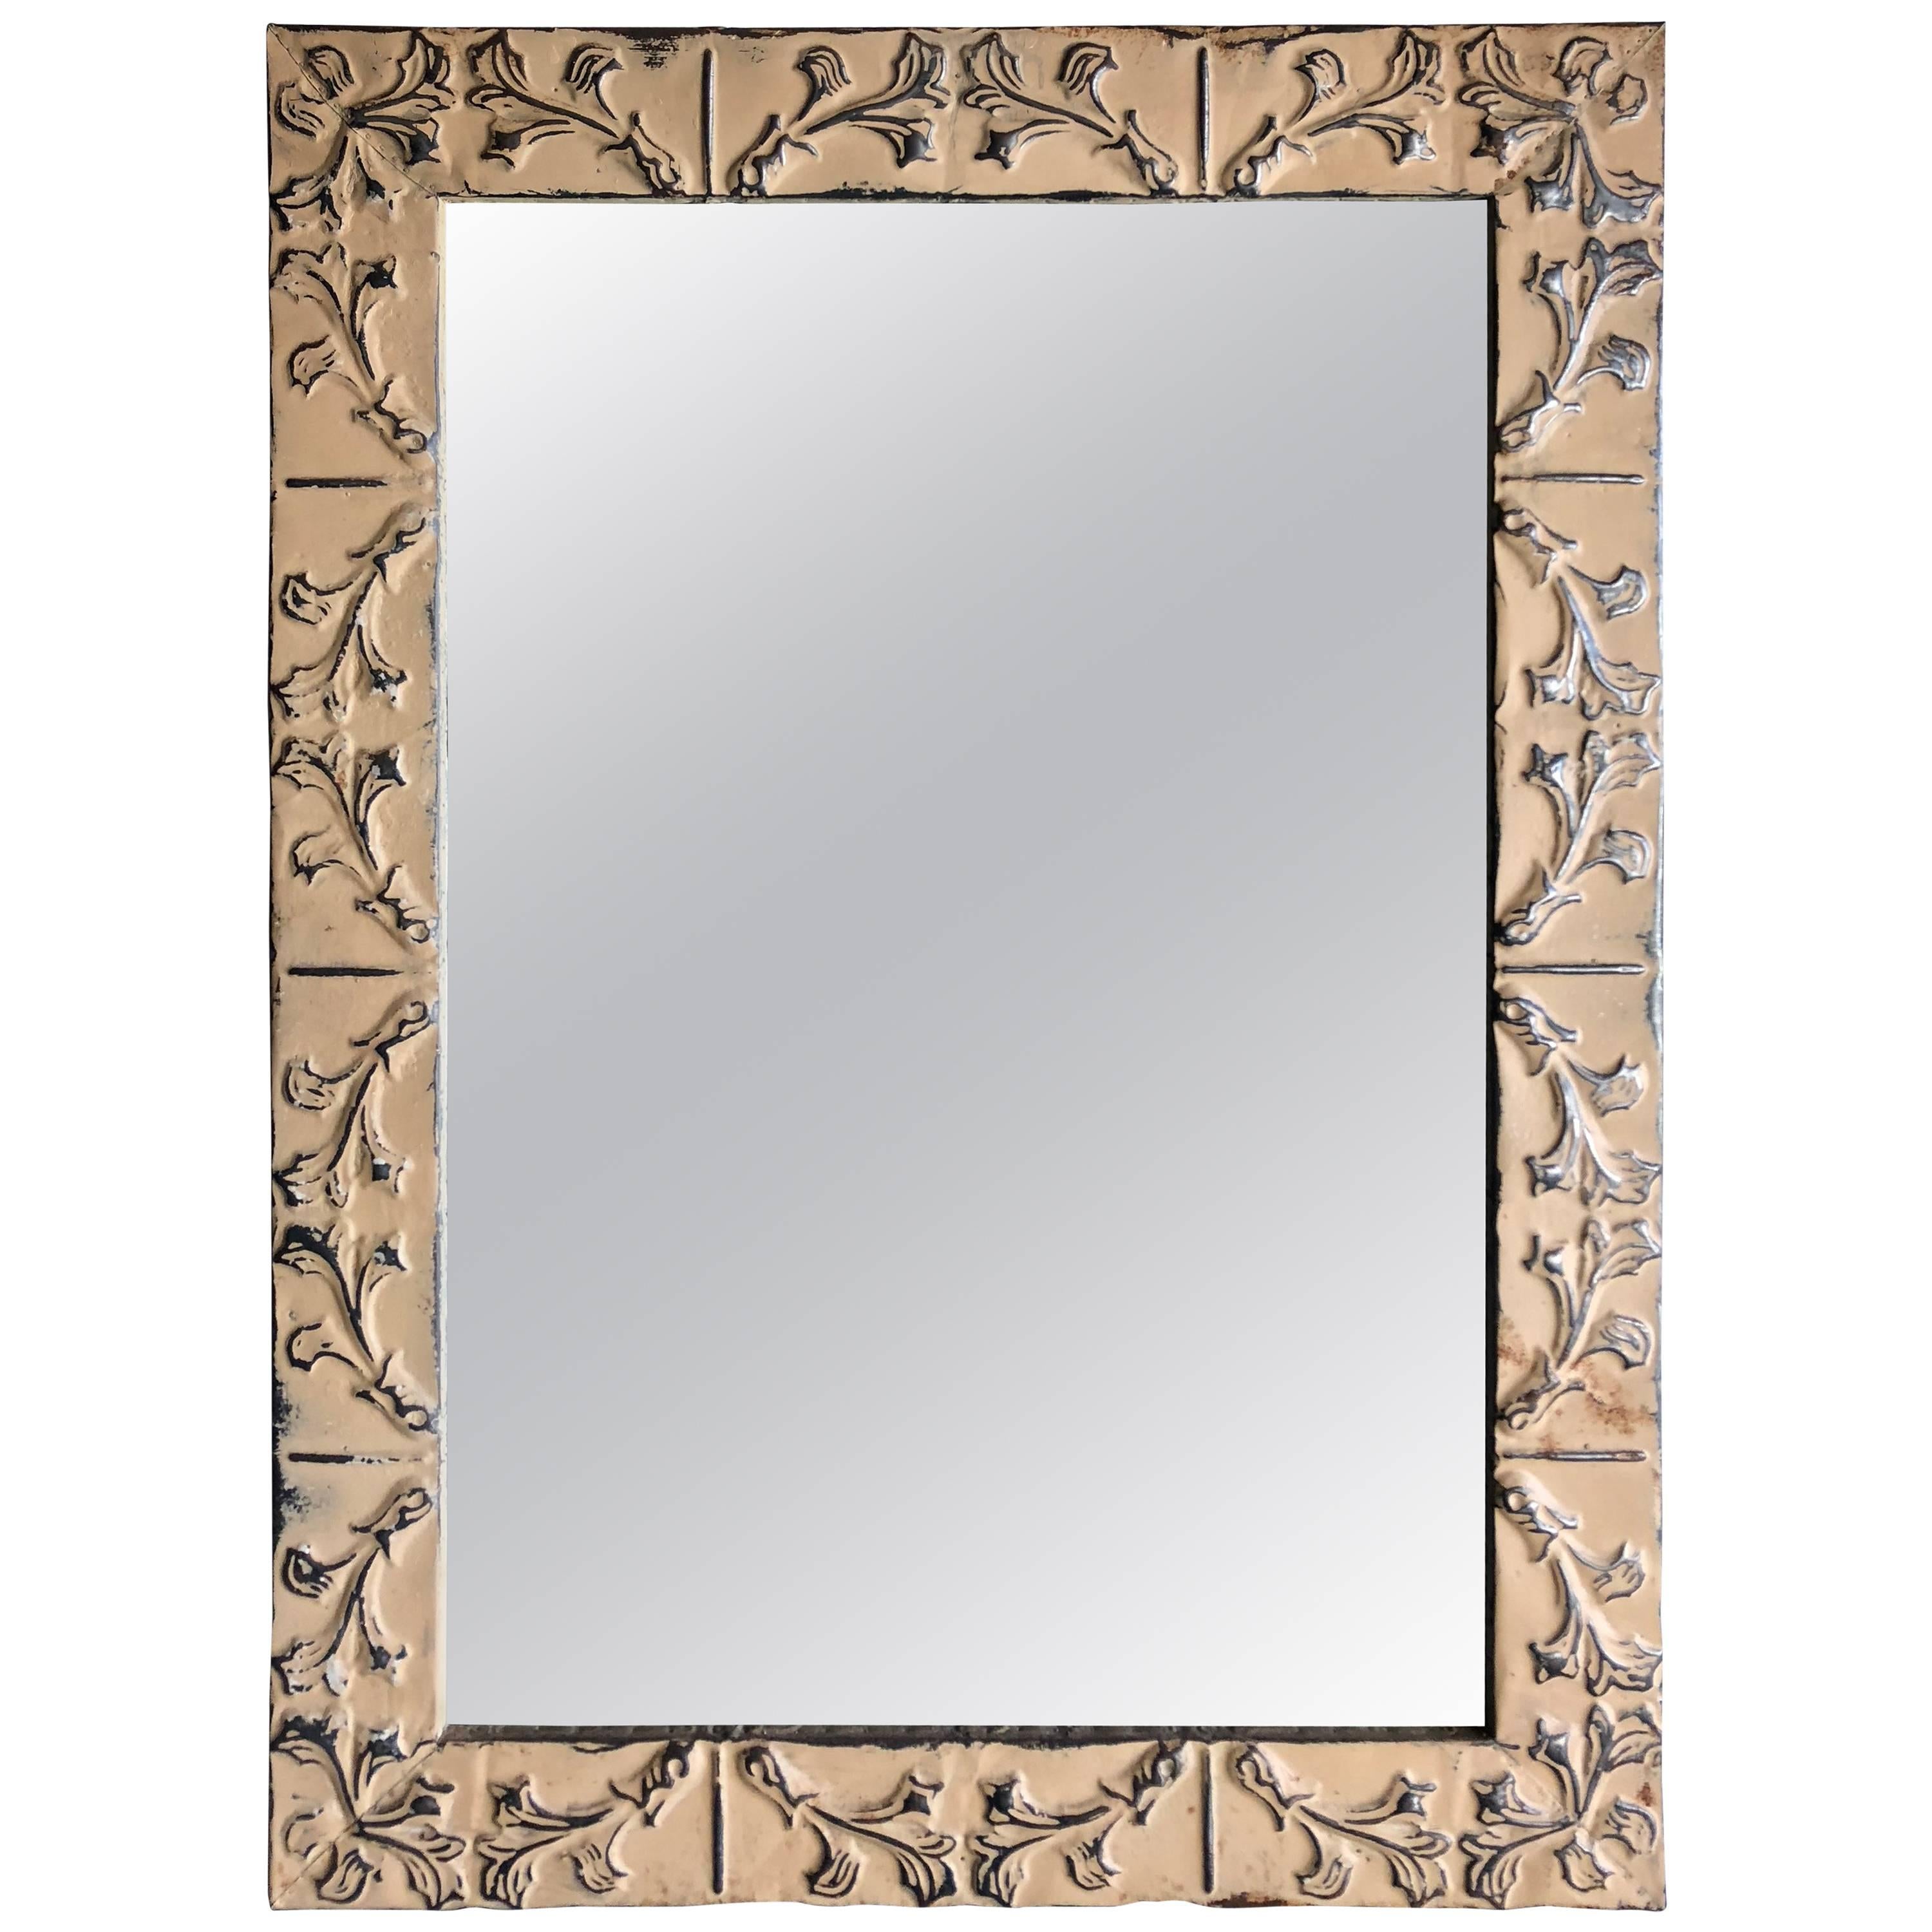 Tin Ceiling Tile Framed Mirror For Sale